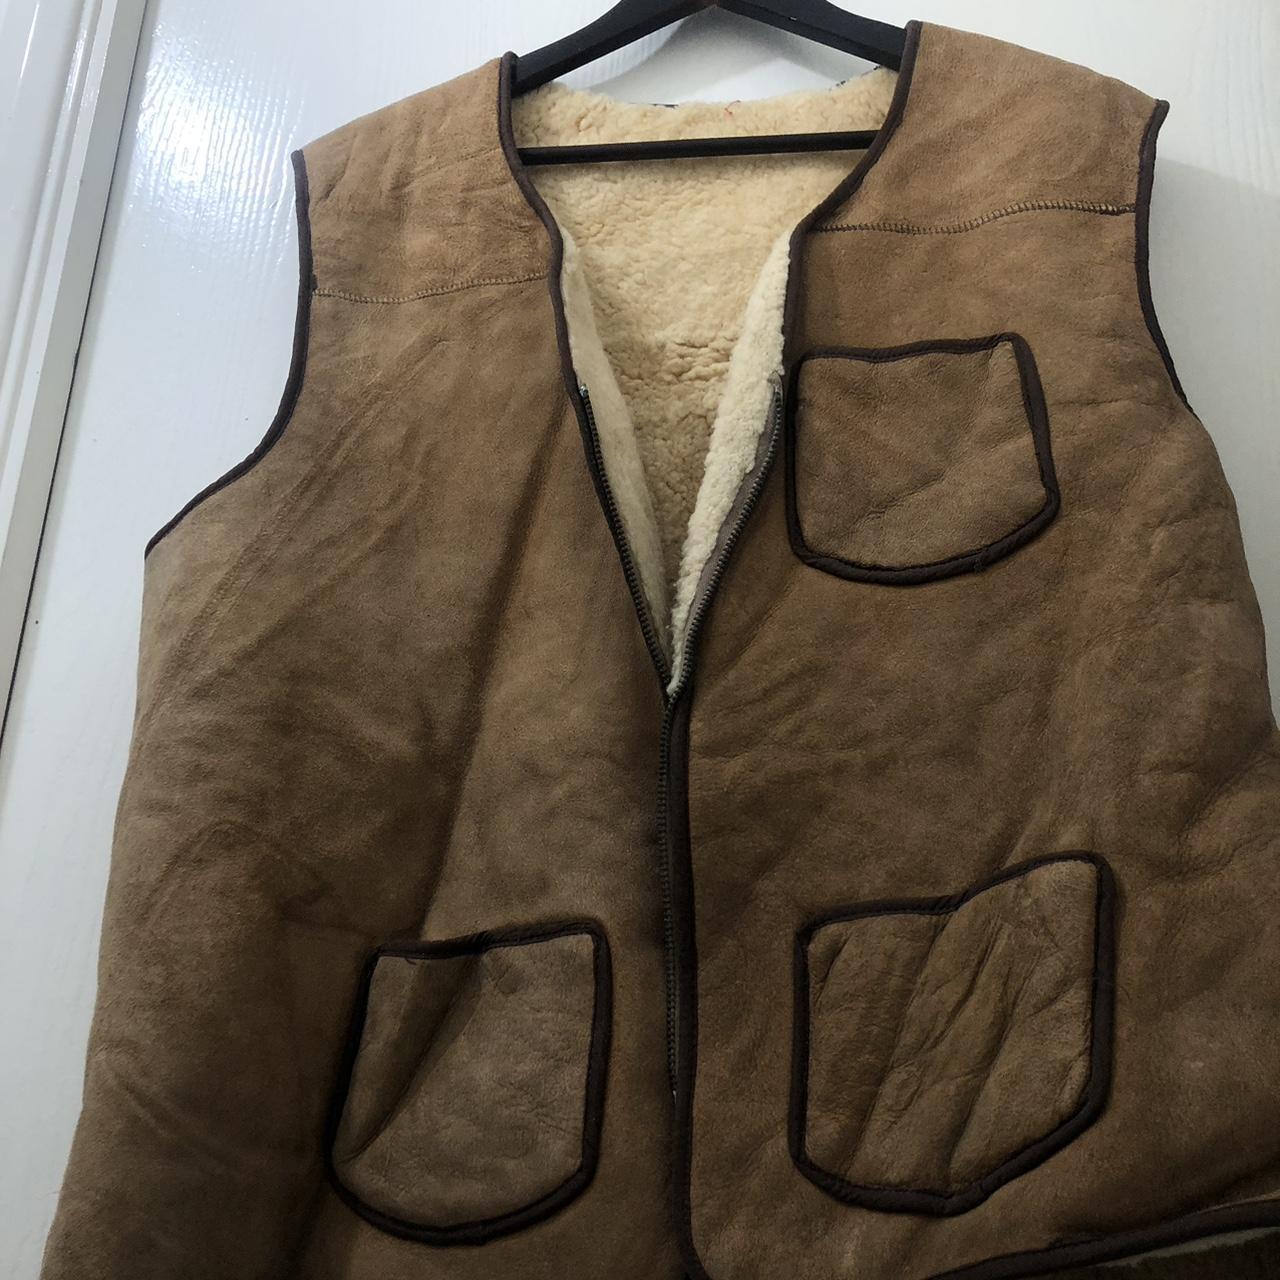 Vintage fleece lined leather gilet vest. Stain on... - Depop